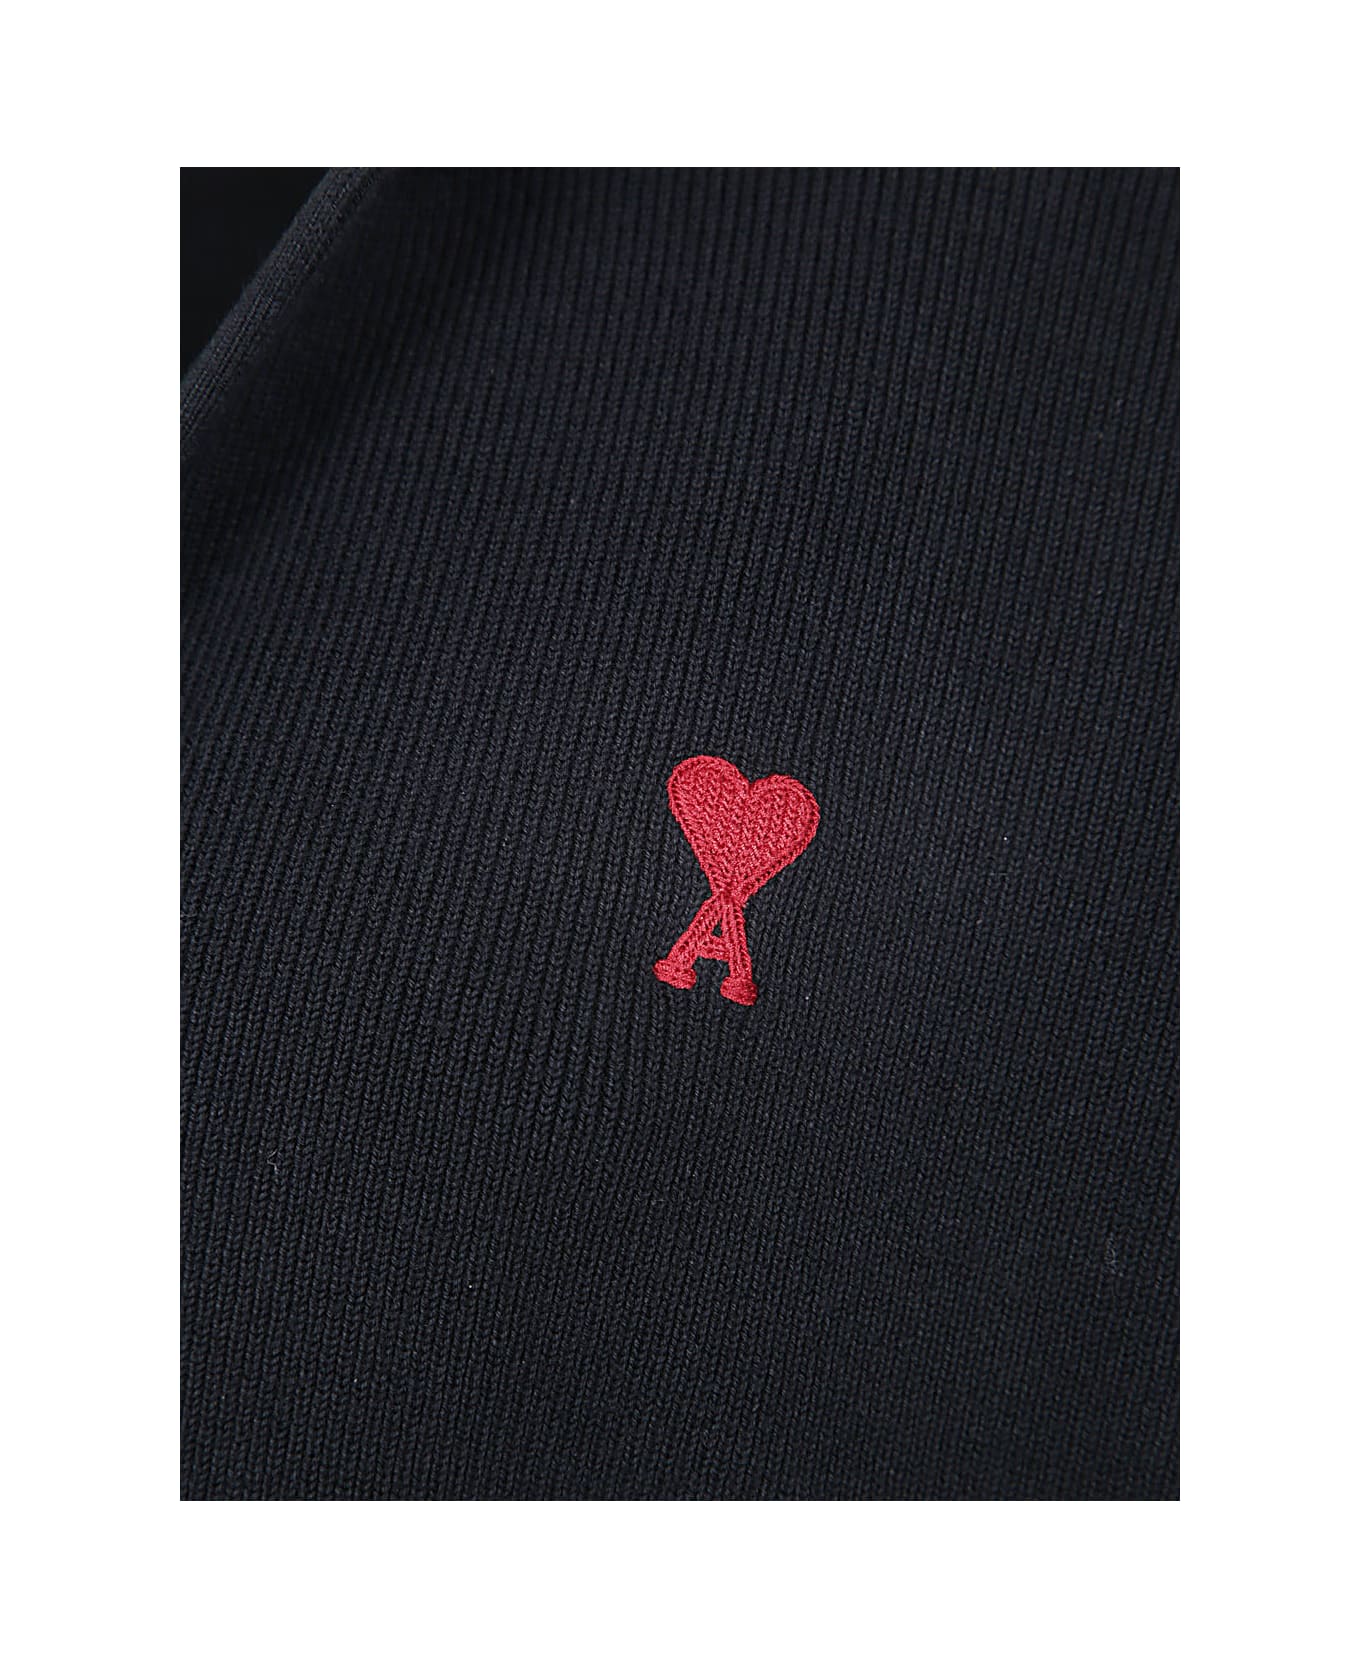 Ami Alexandre Mattiussi Red Adc Polo - Black ポロシャツ